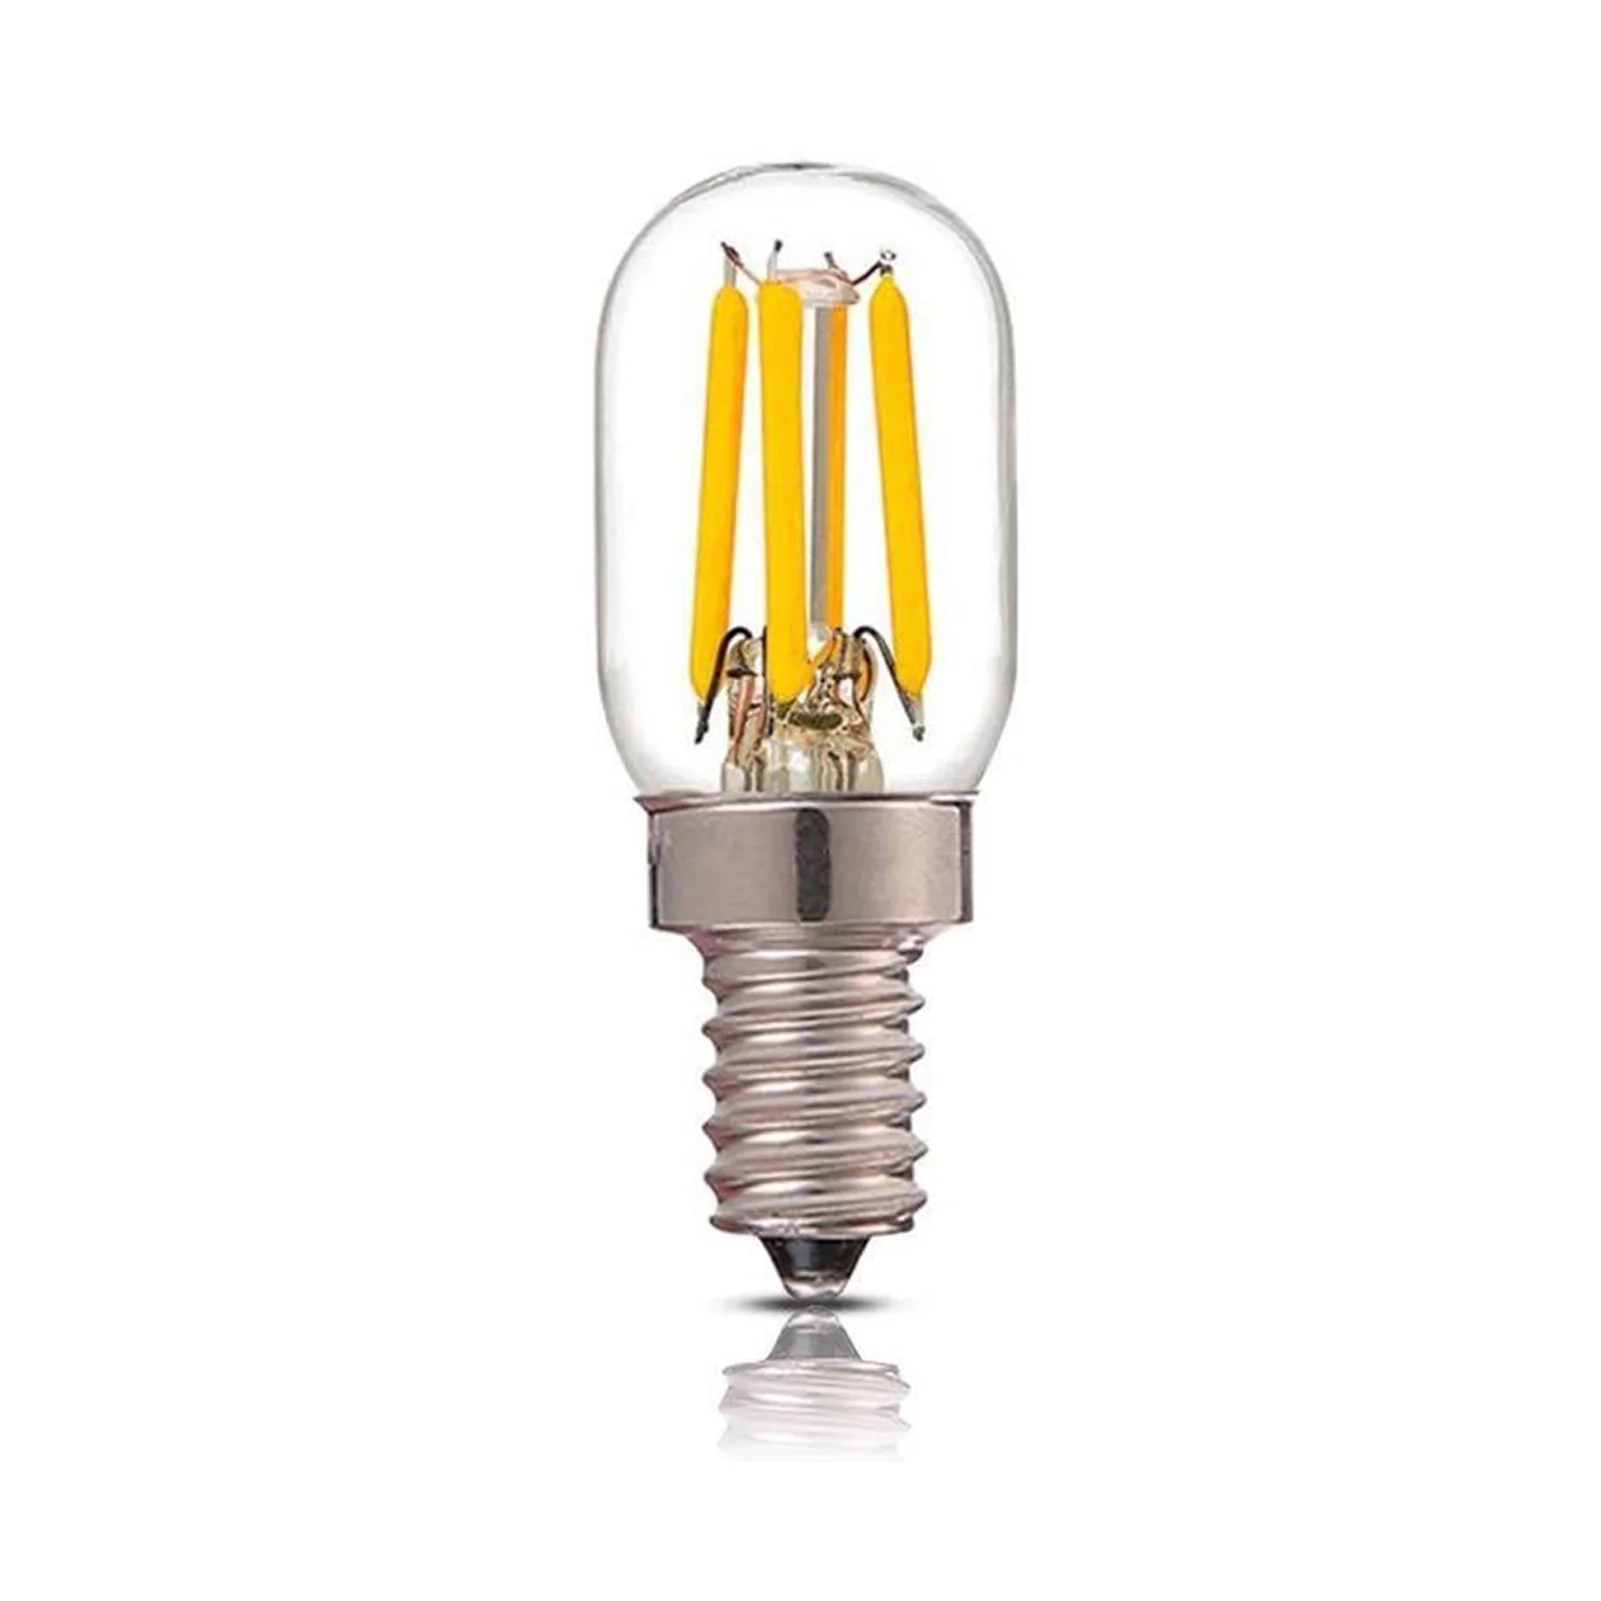 

Светодиодный ная лампочка T20 4 Вт E12, лампочки, энергосберегающие настенные светильники, потолочная лампа, сменные светодиодсветодиодный ла...